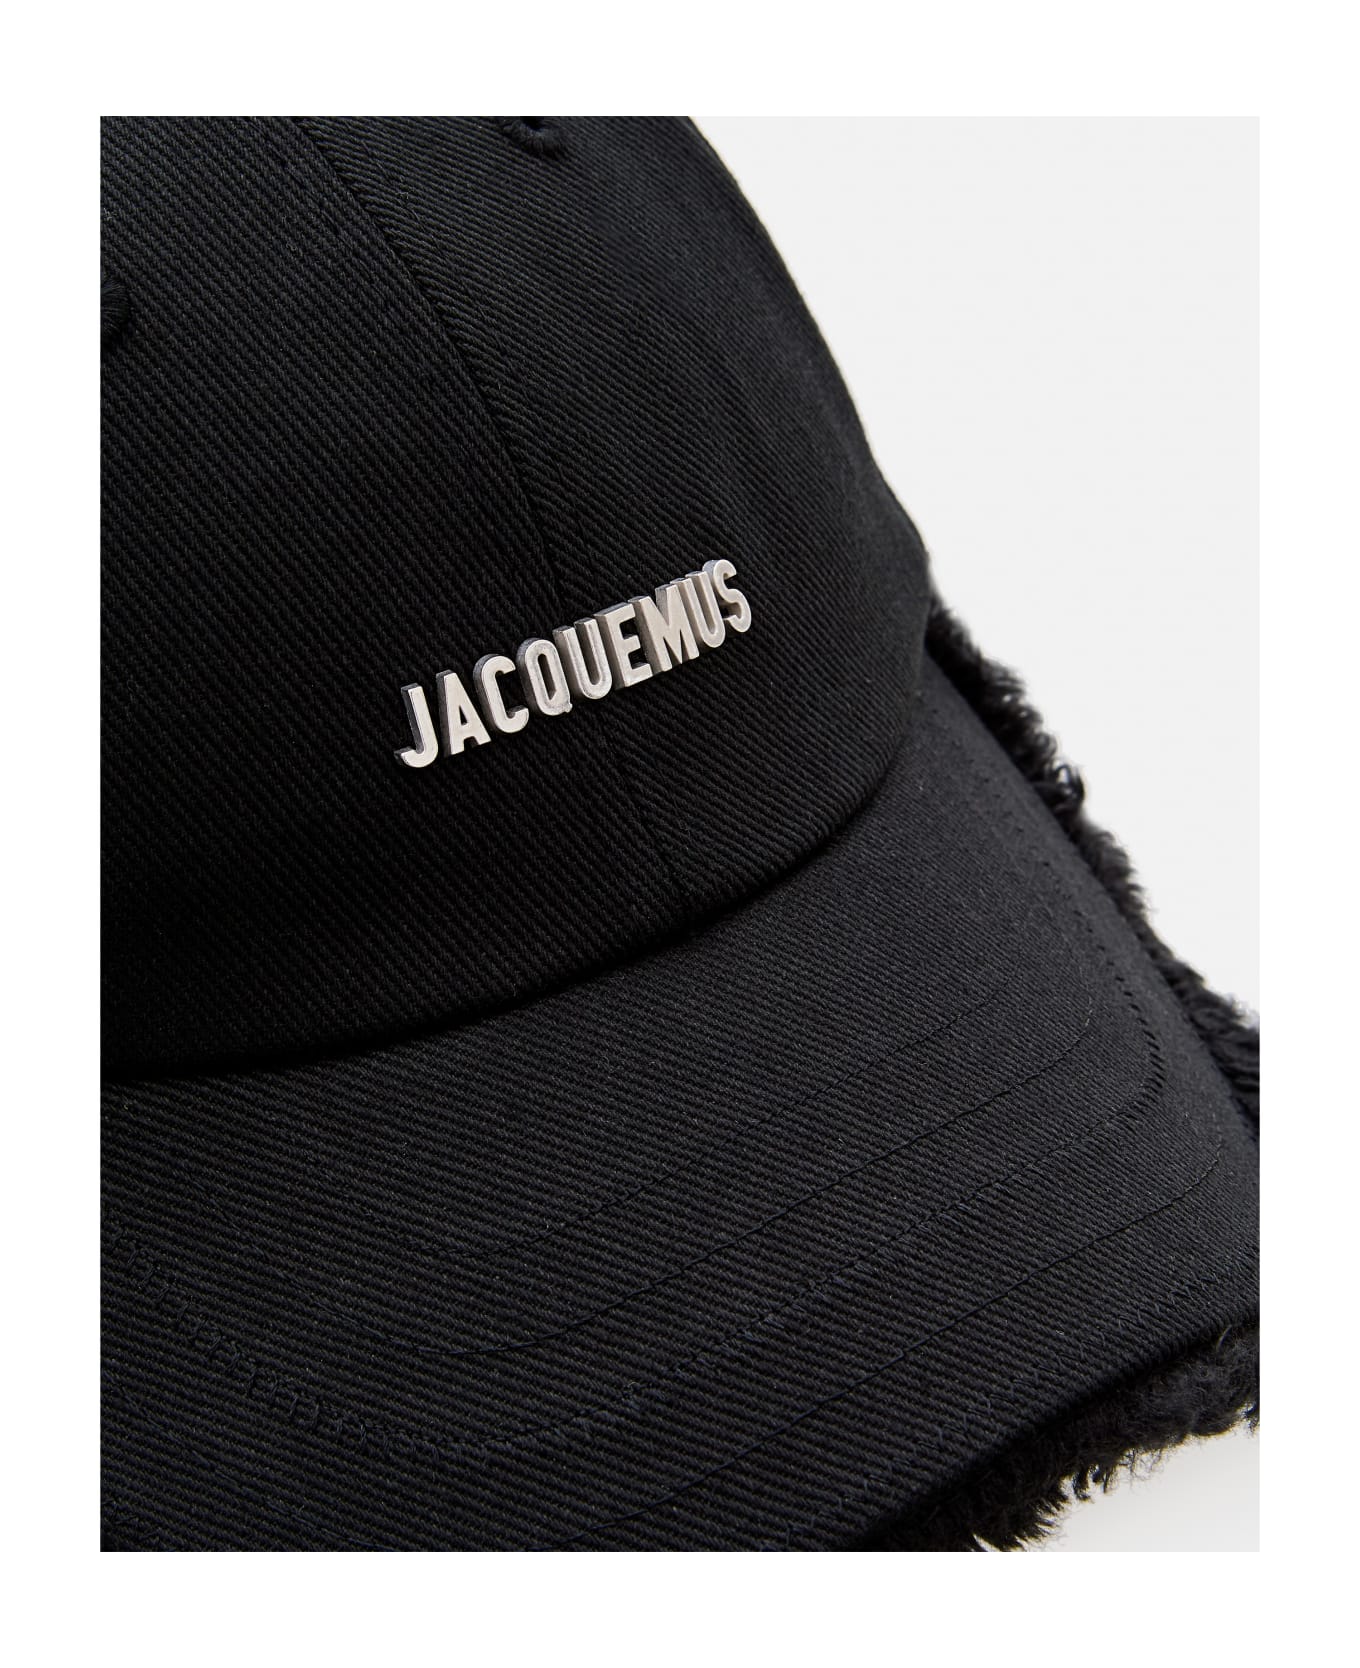 Jacquemus La Casquette Artichaut Baseball Hat - Black 帽子